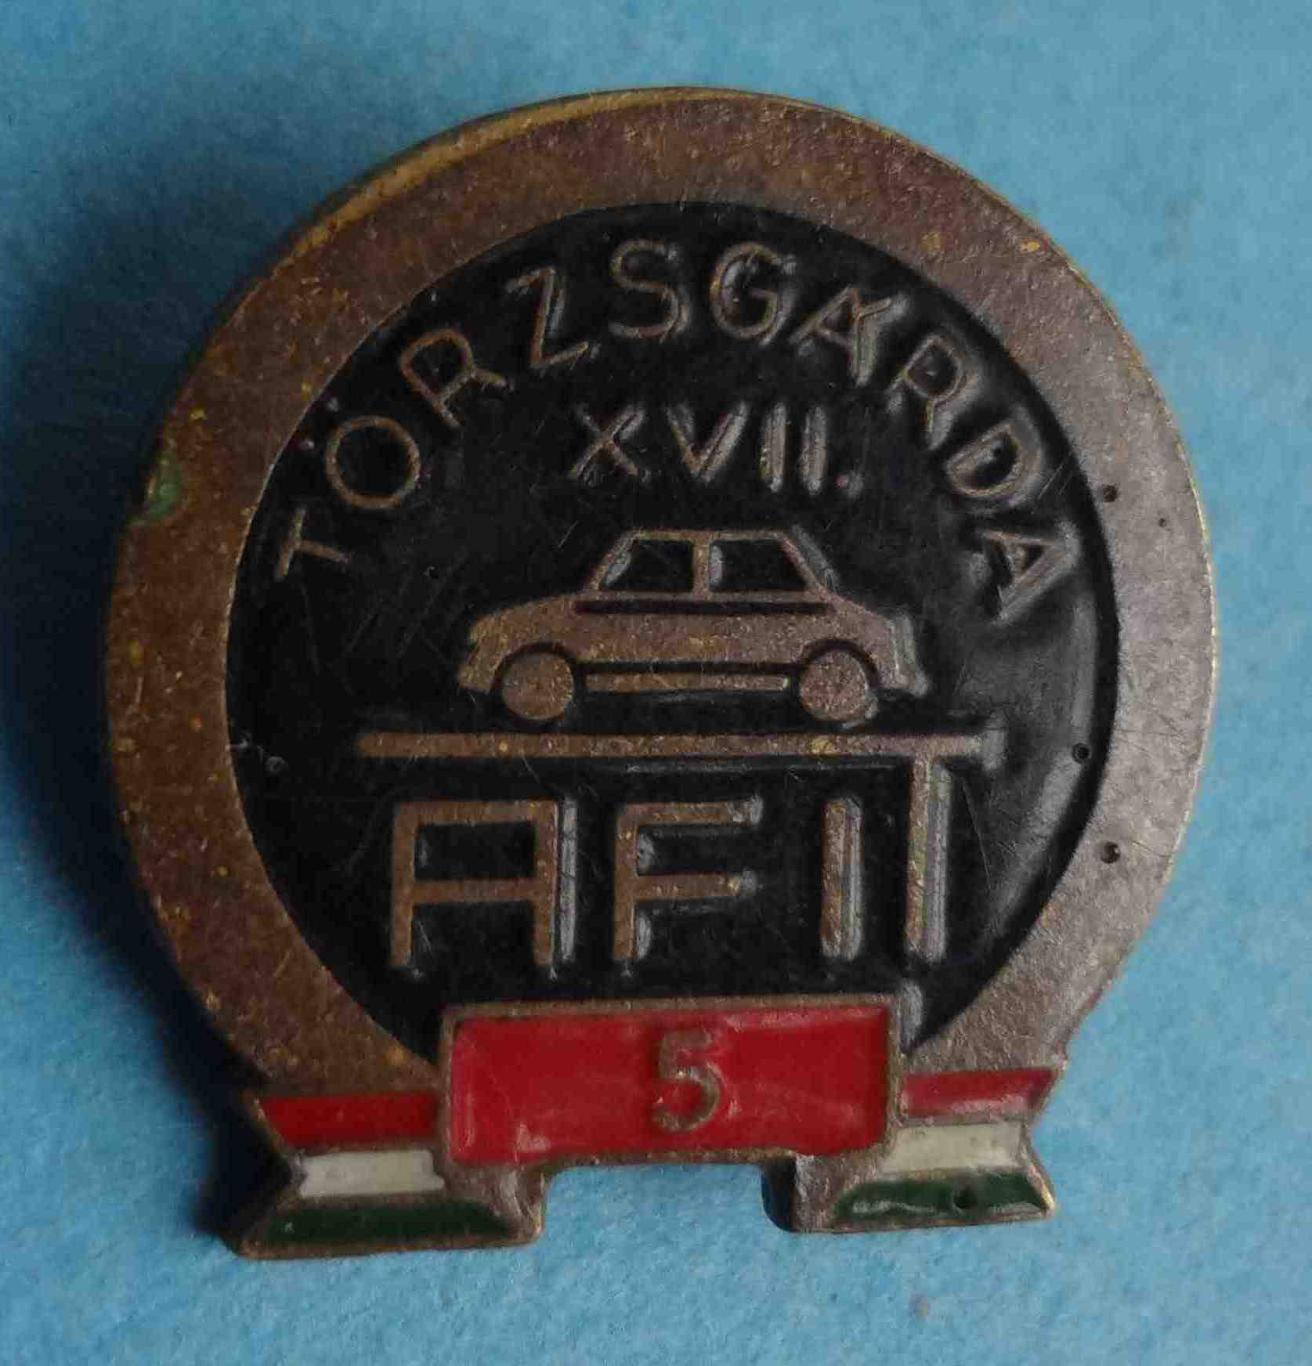 17 Torzsgarda AFIT авто Венгрия5 ст (27)